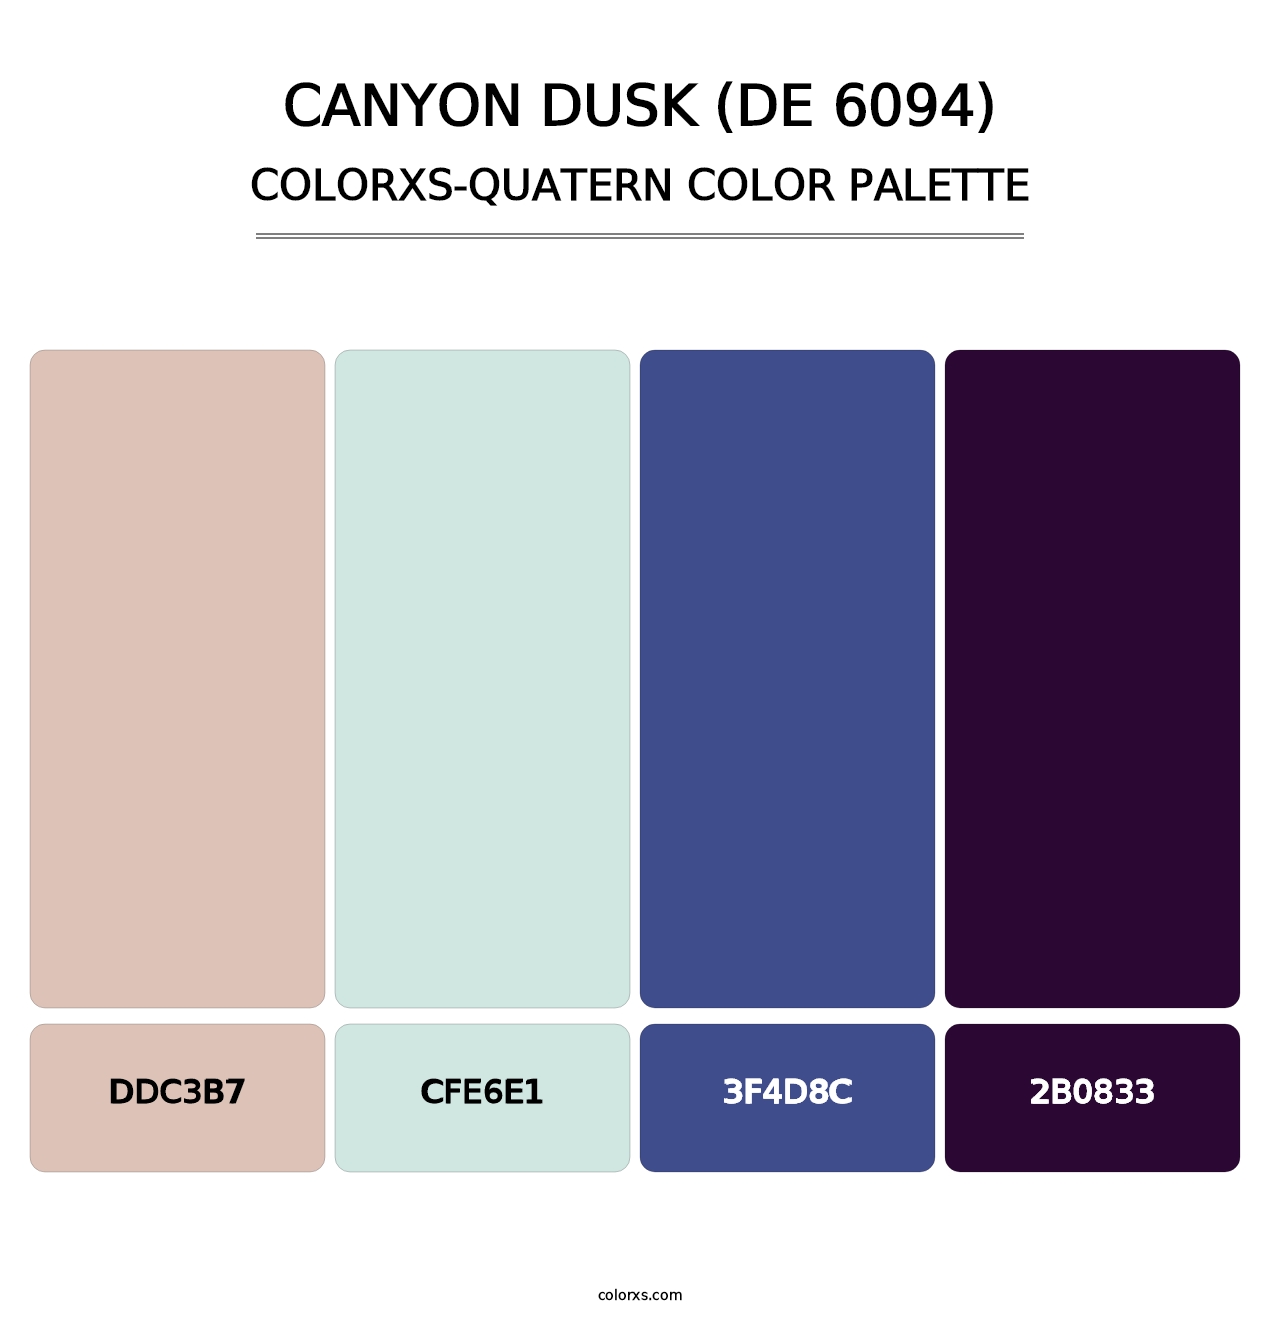 Canyon Dusk (DE 6094) - Colorxs Quatern Palette